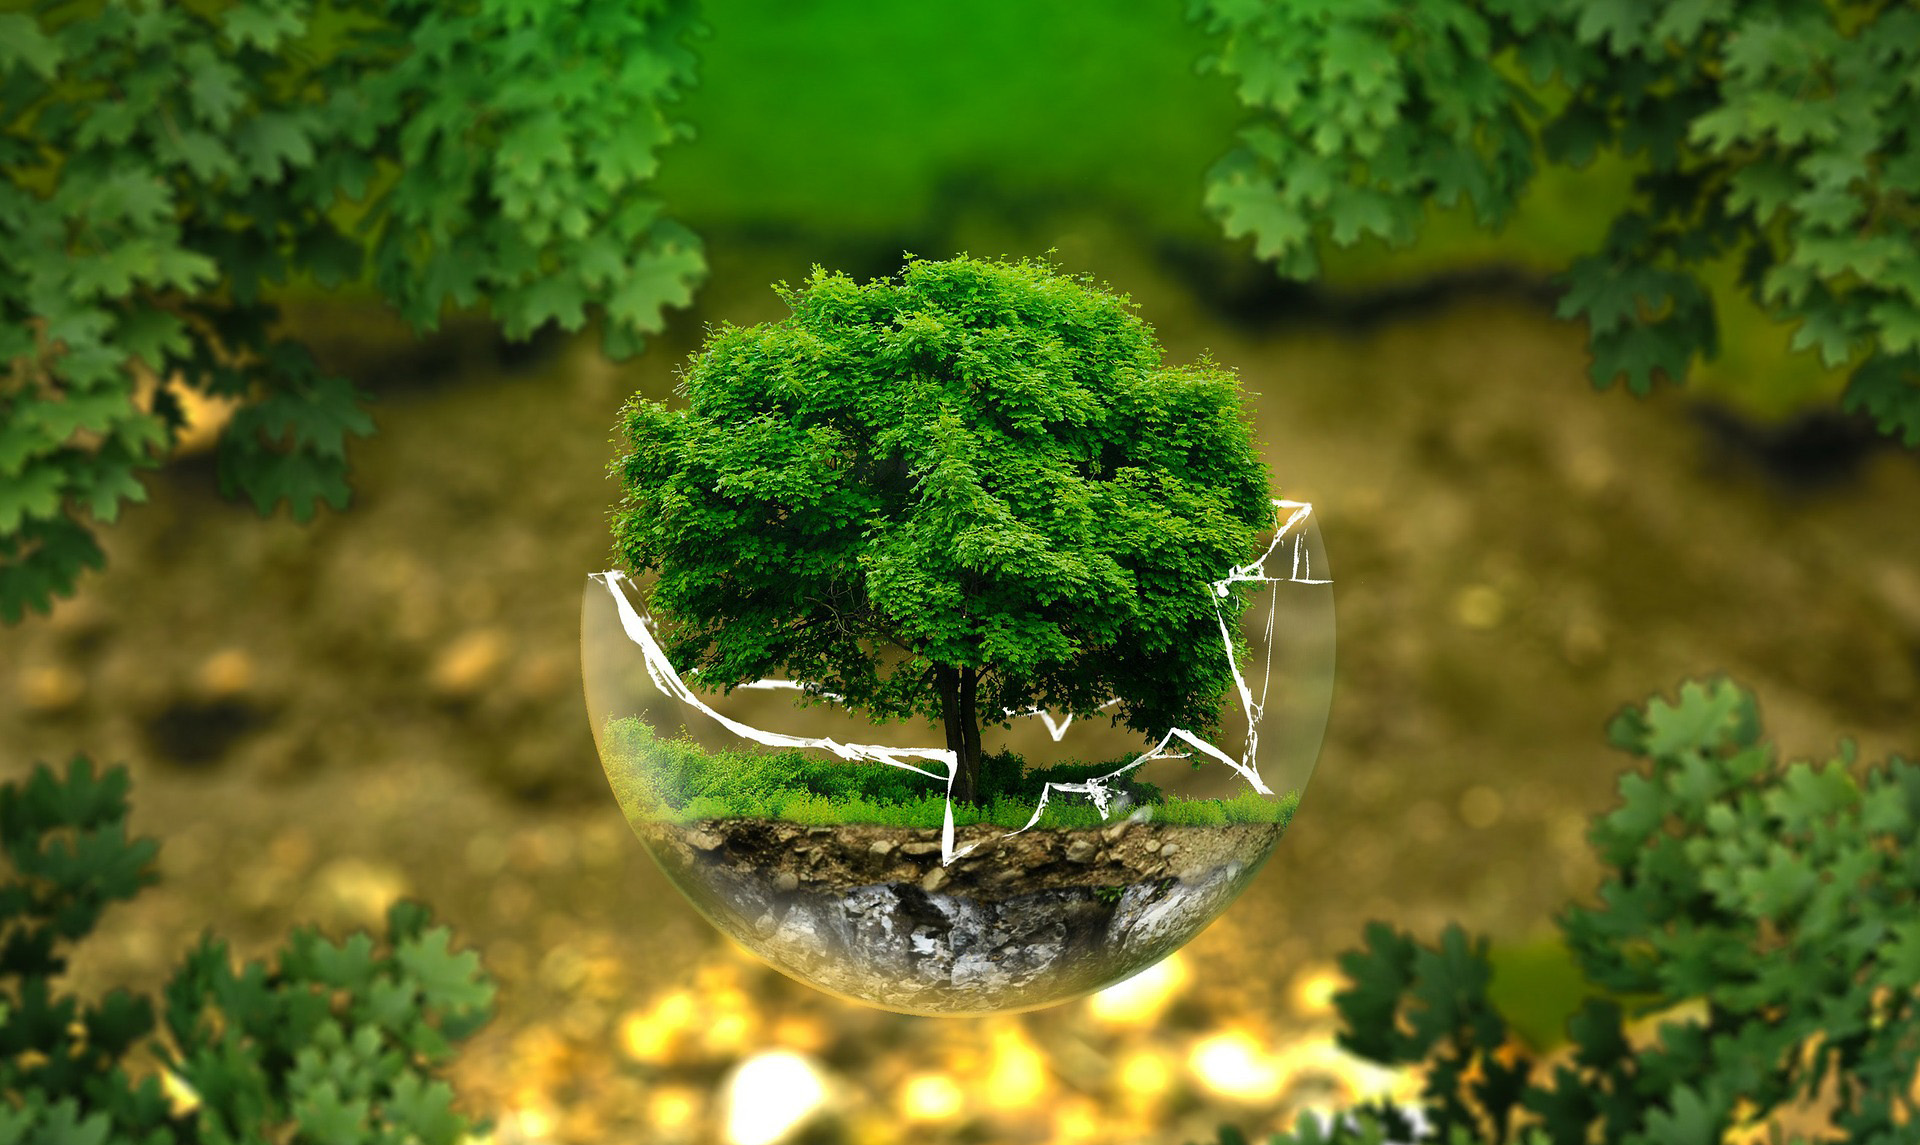 Phục hồi môi trường là gì? Quy định về việc ký quỹ cải tạo, phục hồi môi trường?